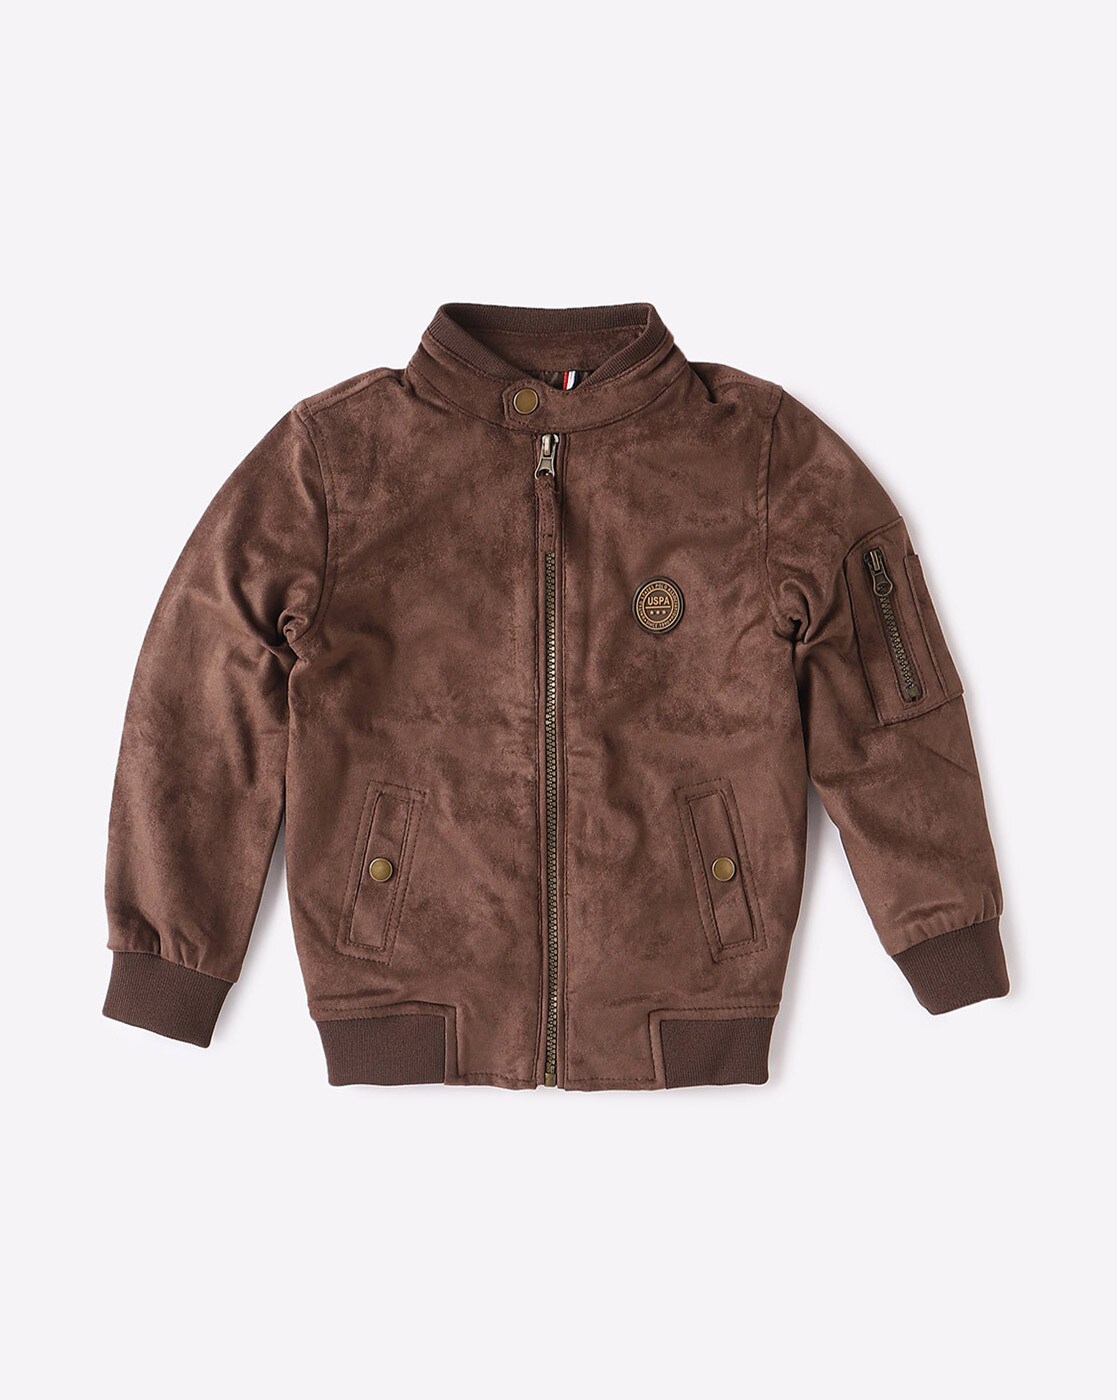 U.S. POLO ASSN. jackets : Buy U.S. POLO ASSN. Genuine Leather Panelled Biker  Jacket Online | Nykaa Fashion